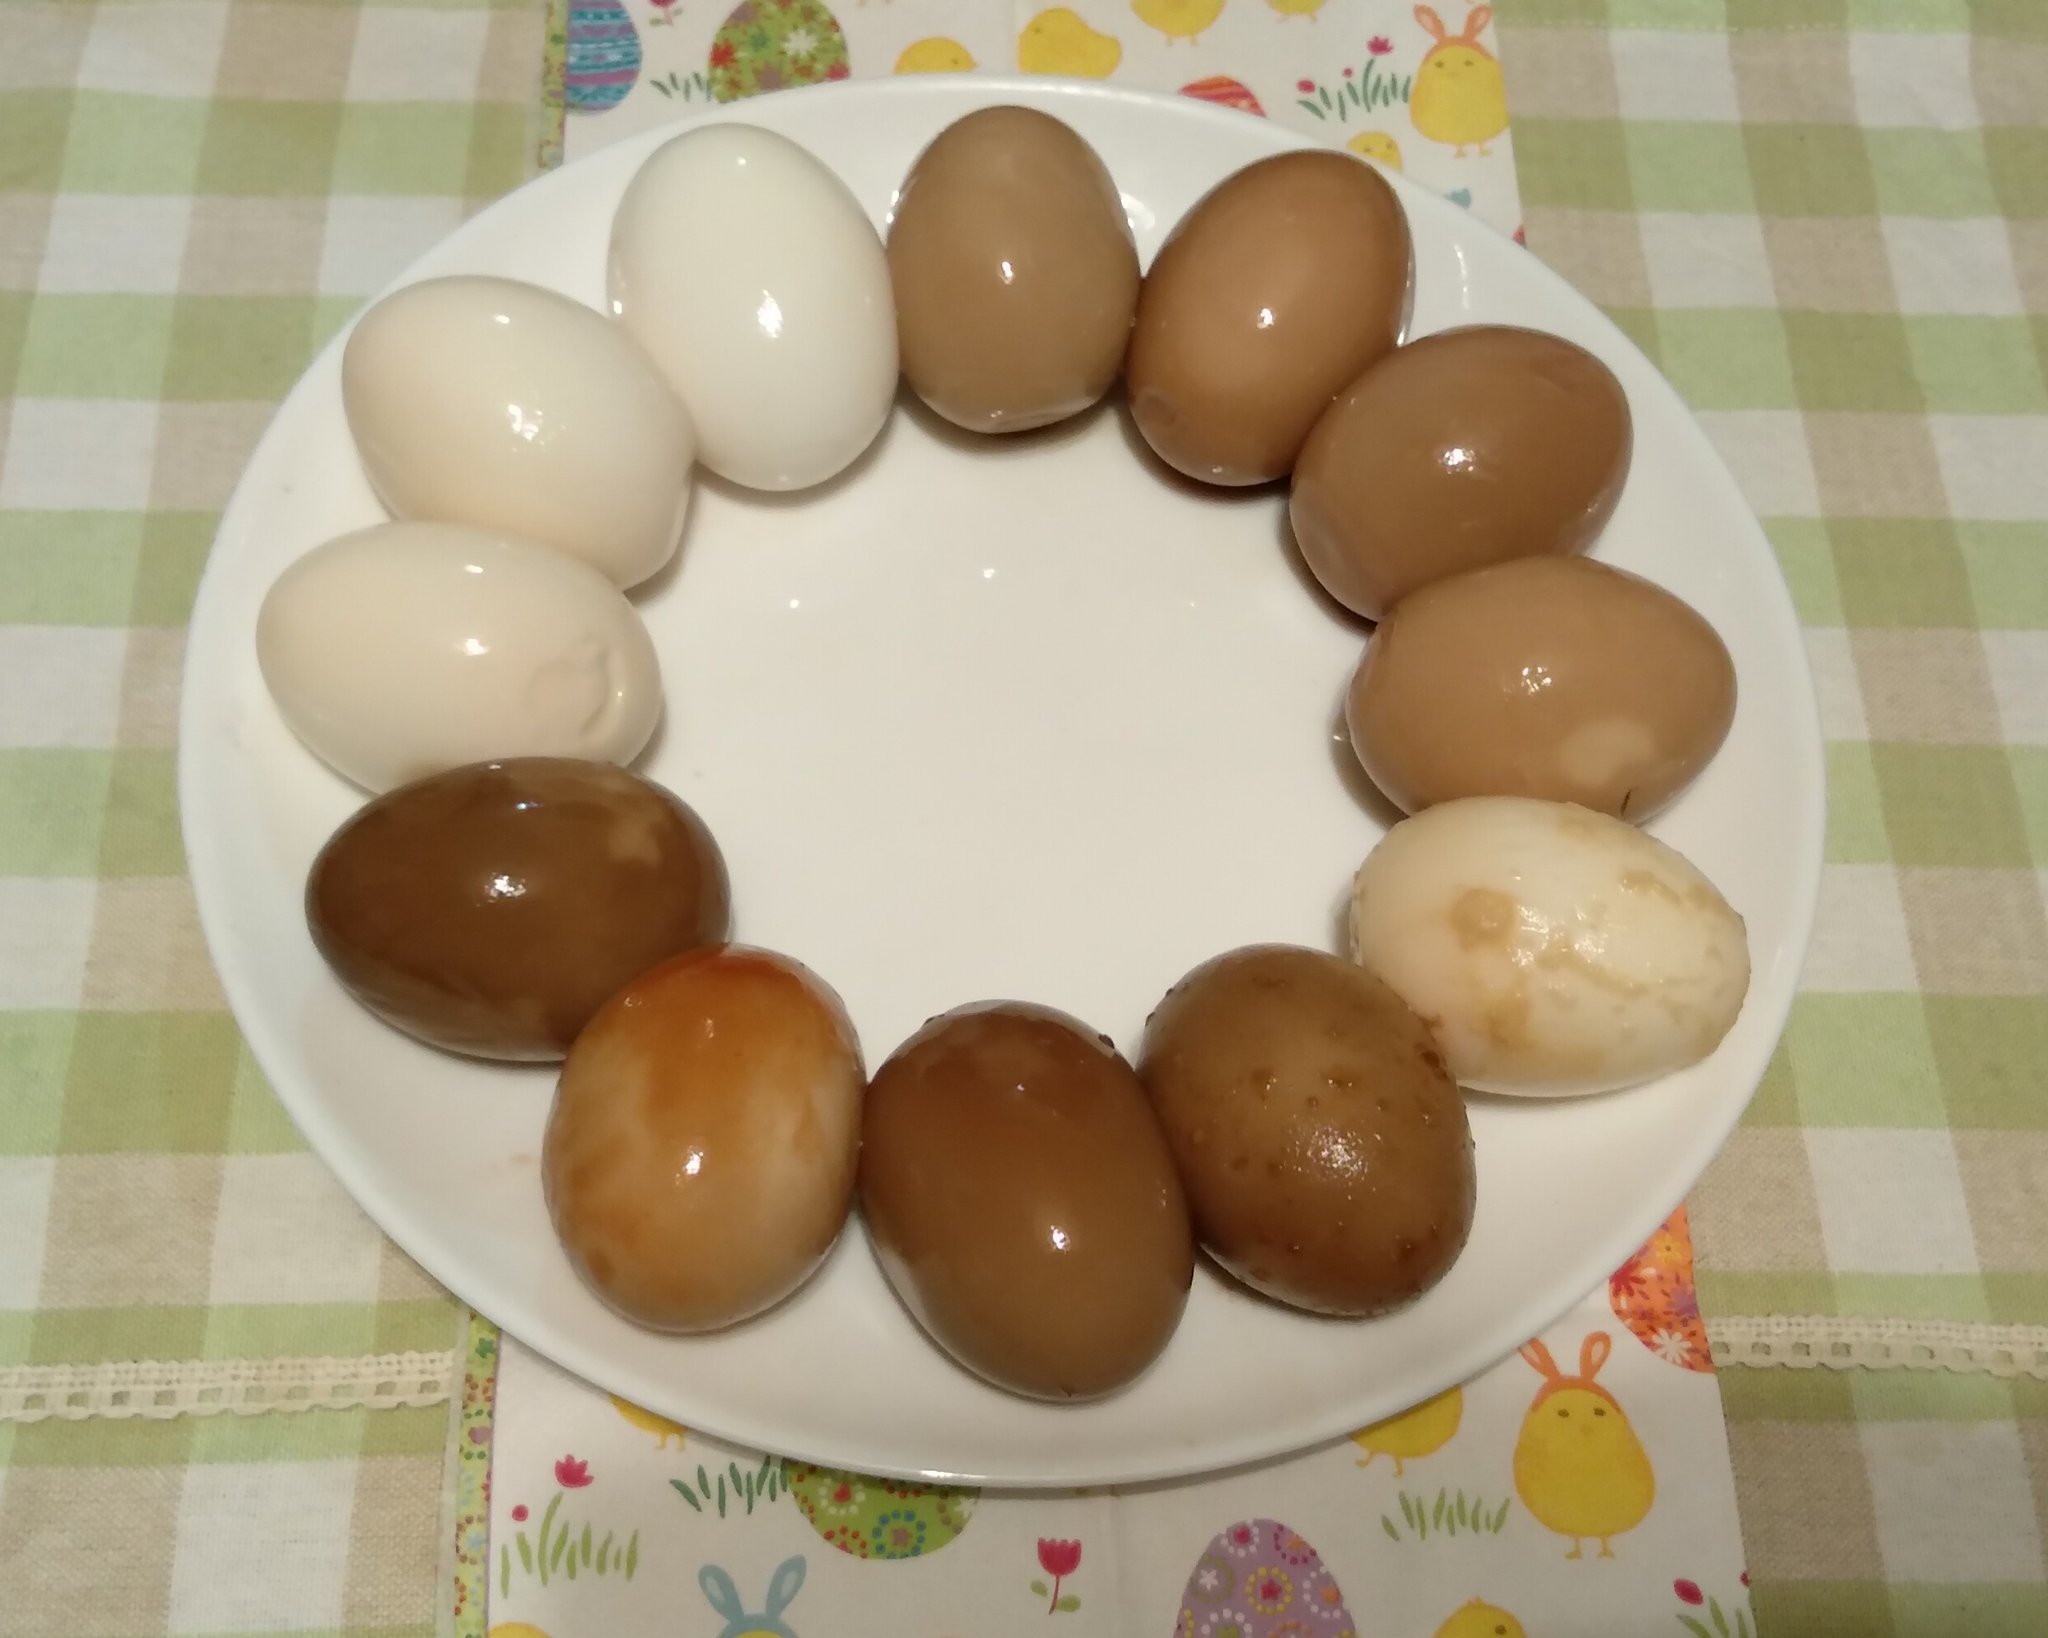 ハル 卵が大好きで 以前より味玉の食べ比べをしたい と思っていたのを実行してみました どれが１番という主旨ではないため どのような味でどんな時に合うか という視点でひとつひとつのレシピにコメントしていきます 少しでも読んだ方の参考になれば